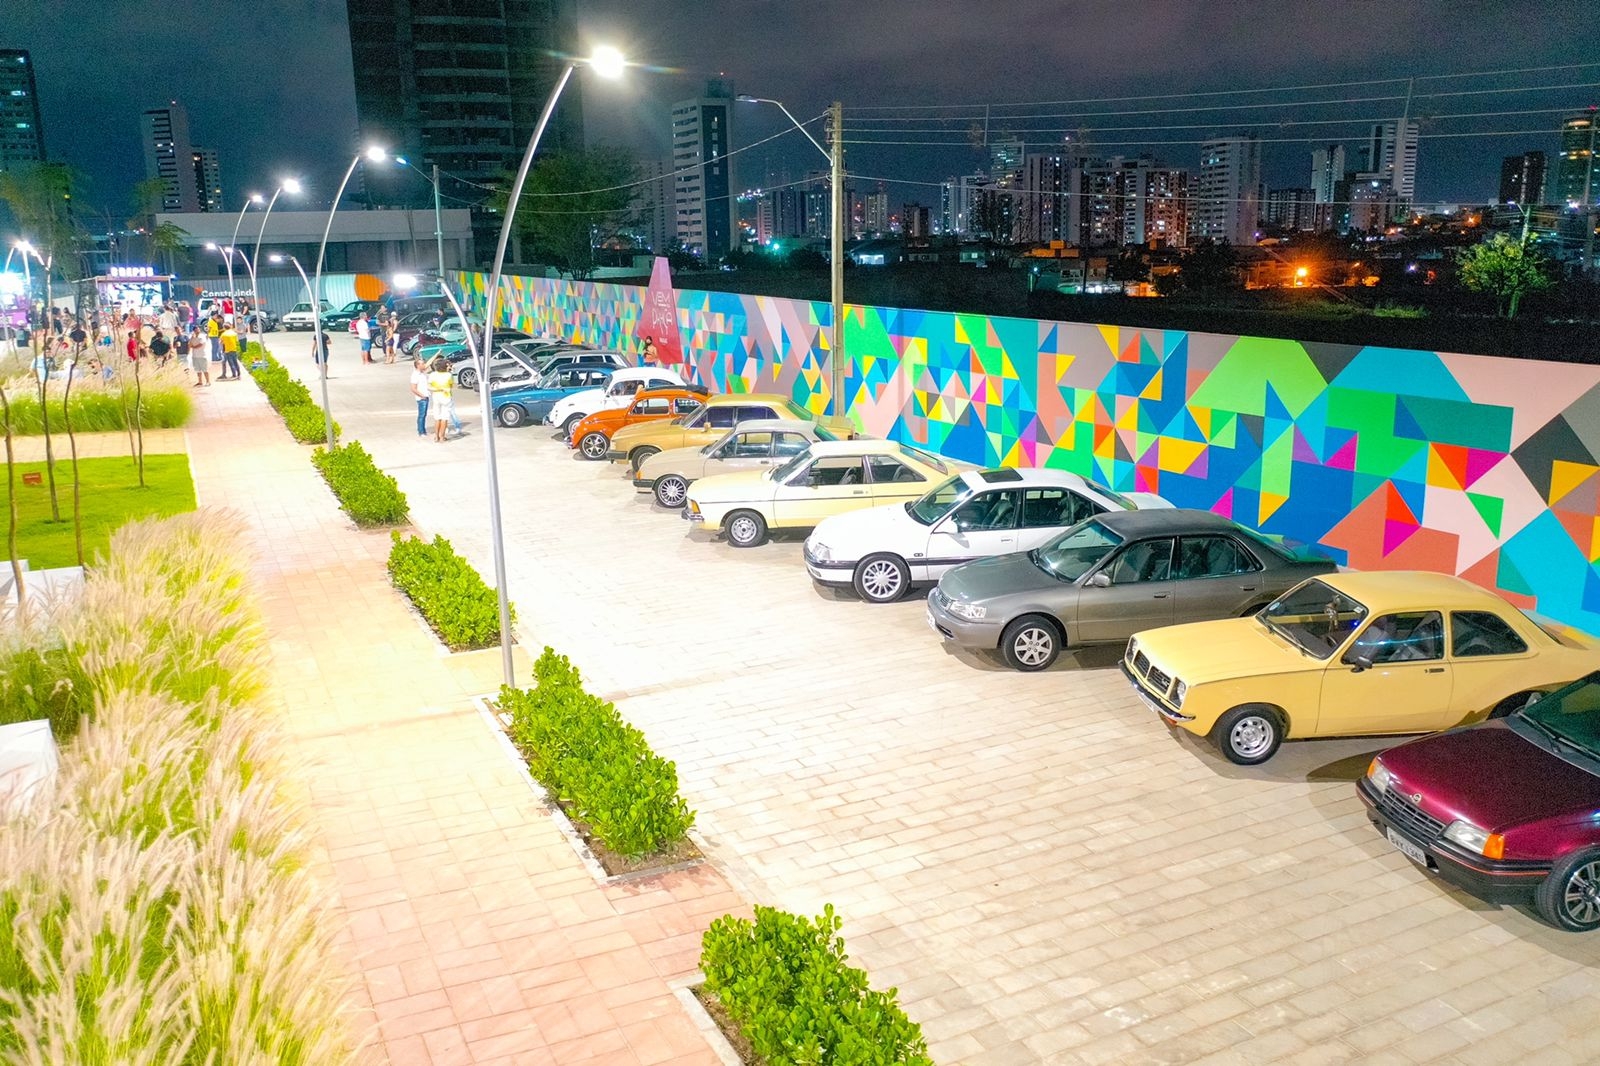 Encontro de Carros Antigos na Praça acontece nesta sexta (29) em Caruaru